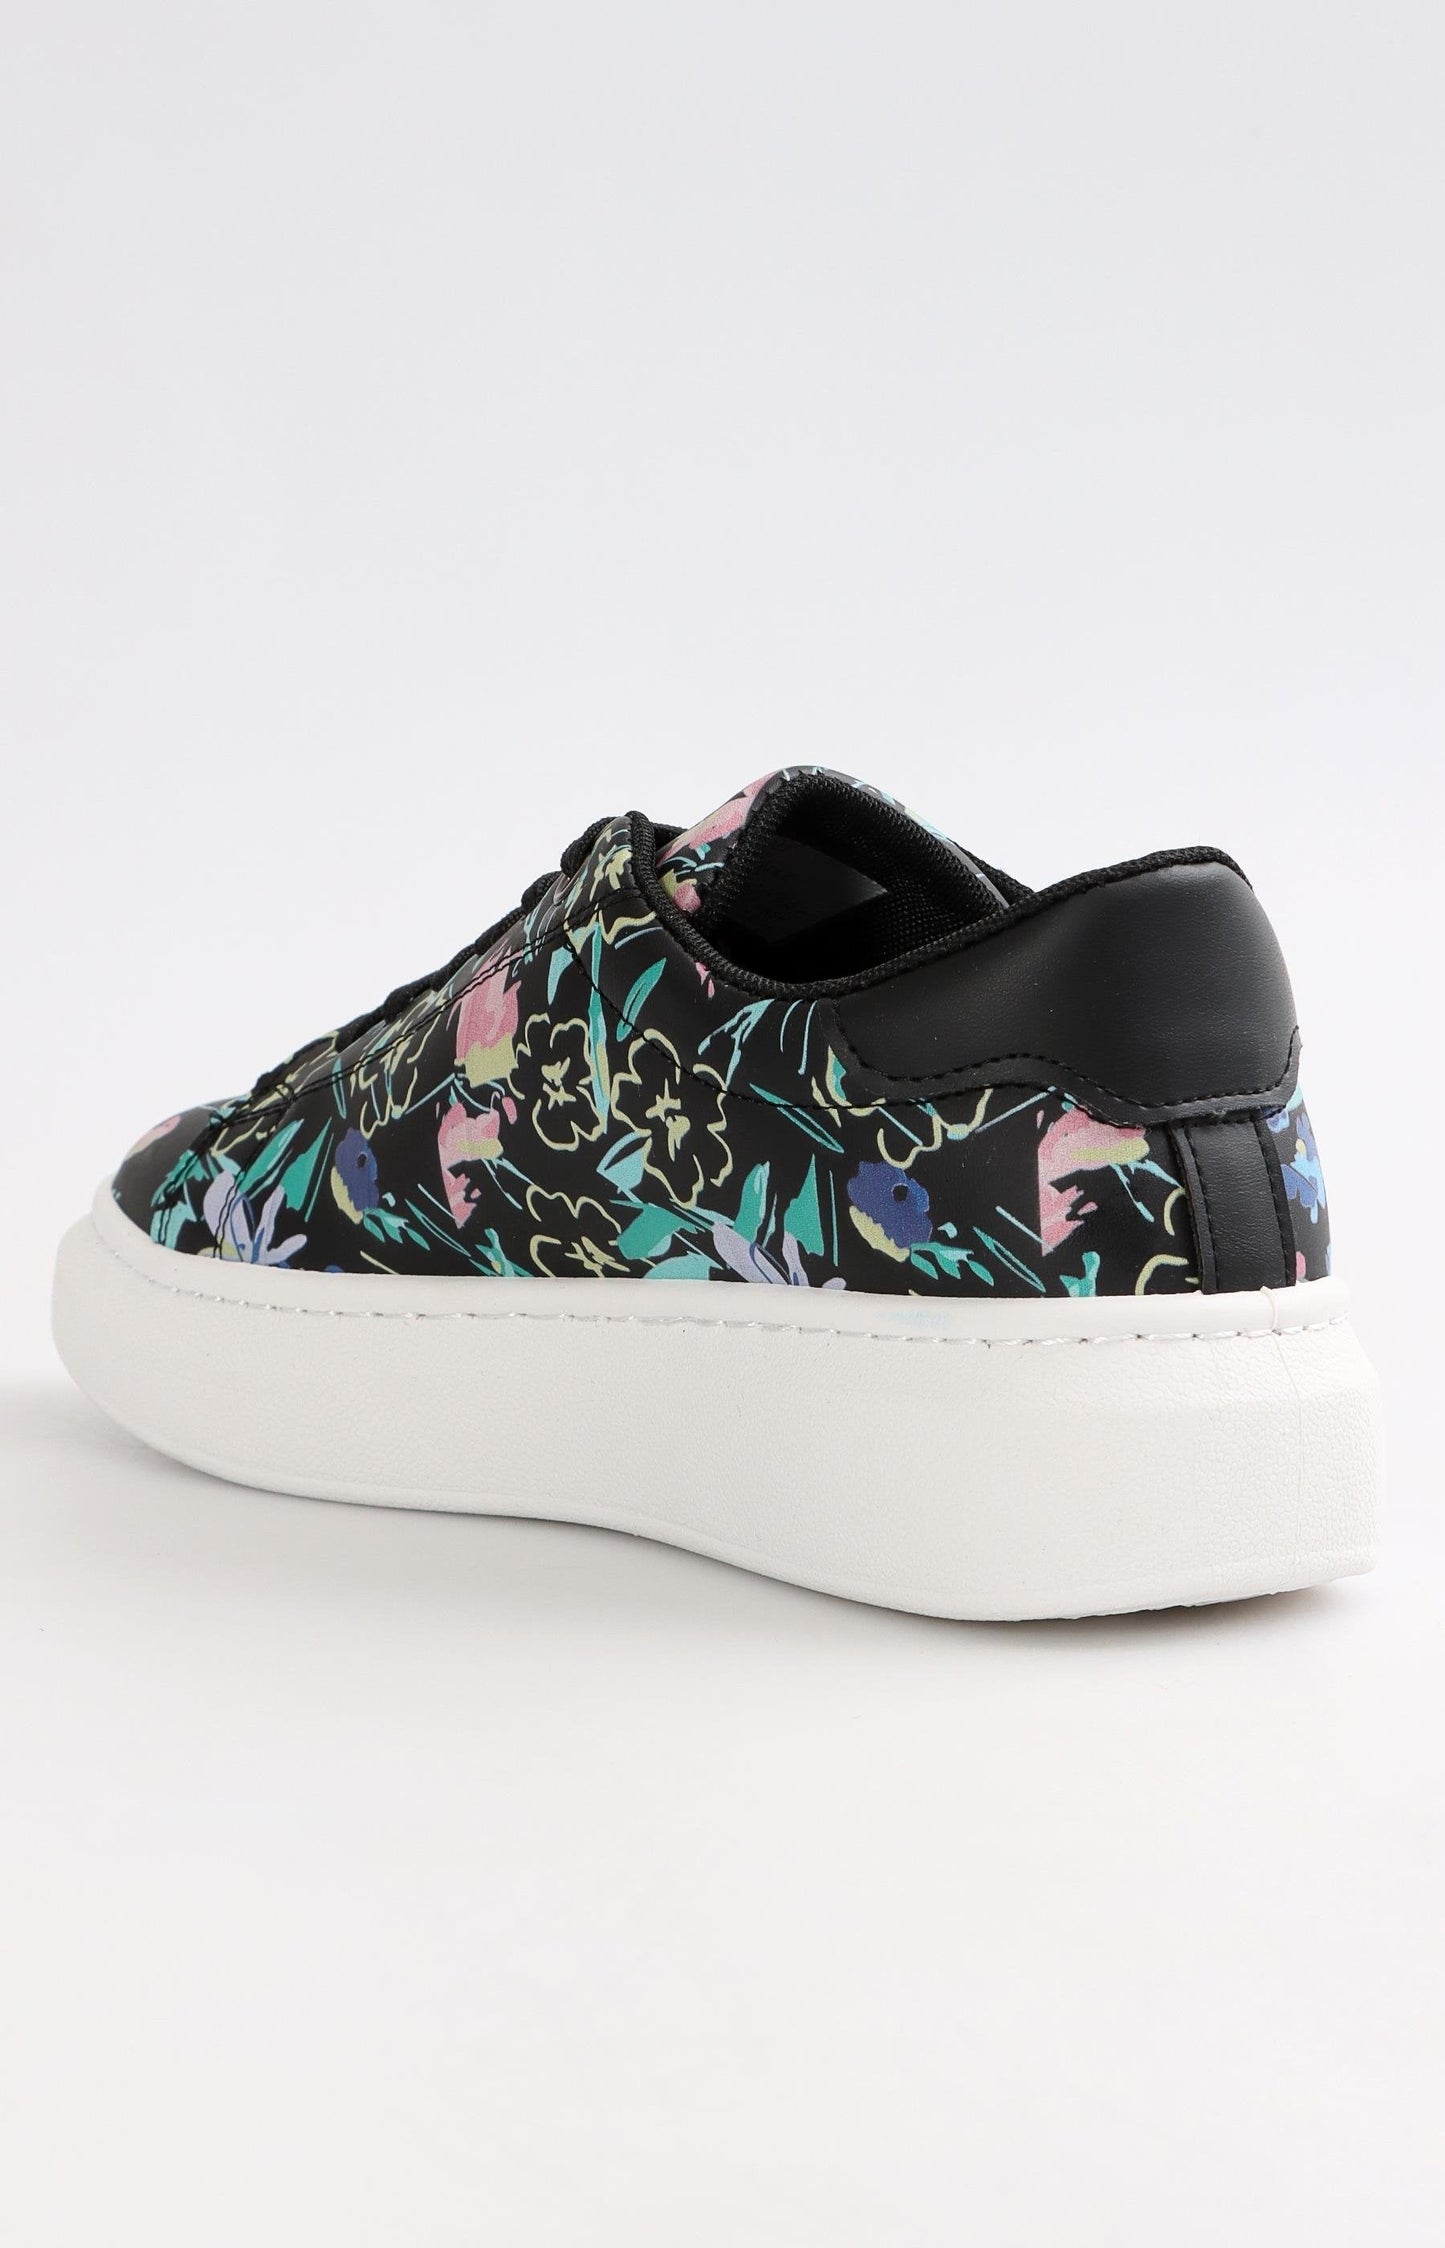 Ladies Low Cut Casual Sneakers - Black Floral